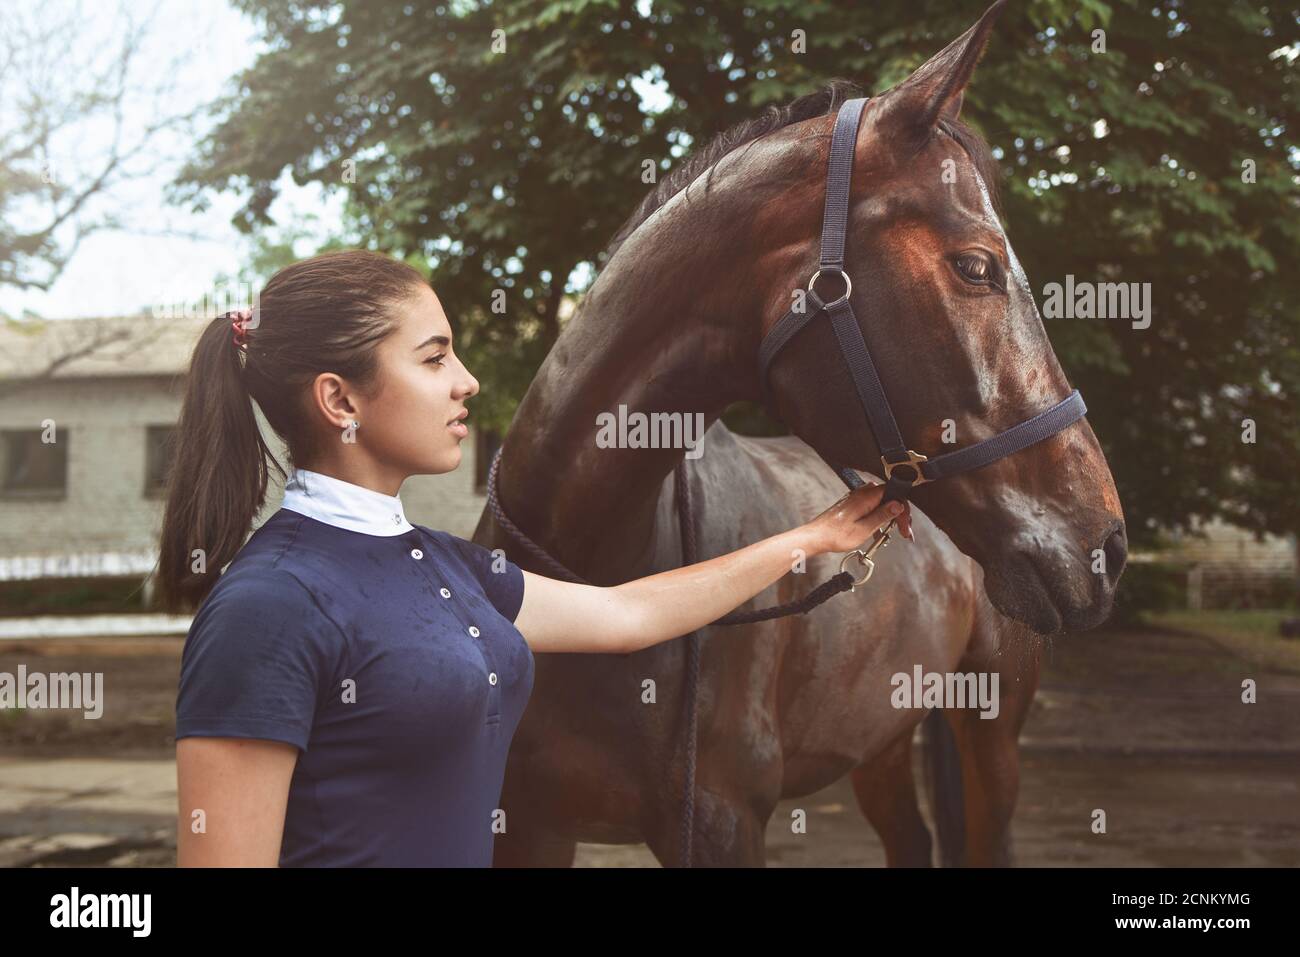 Ein junges Mädchen spricht und kümmert sich um ihr Pferd. Sie liebt die Tiere und verbringt freudig ihre Zeit in ihrer Umgebung. Liebe Stockfoto